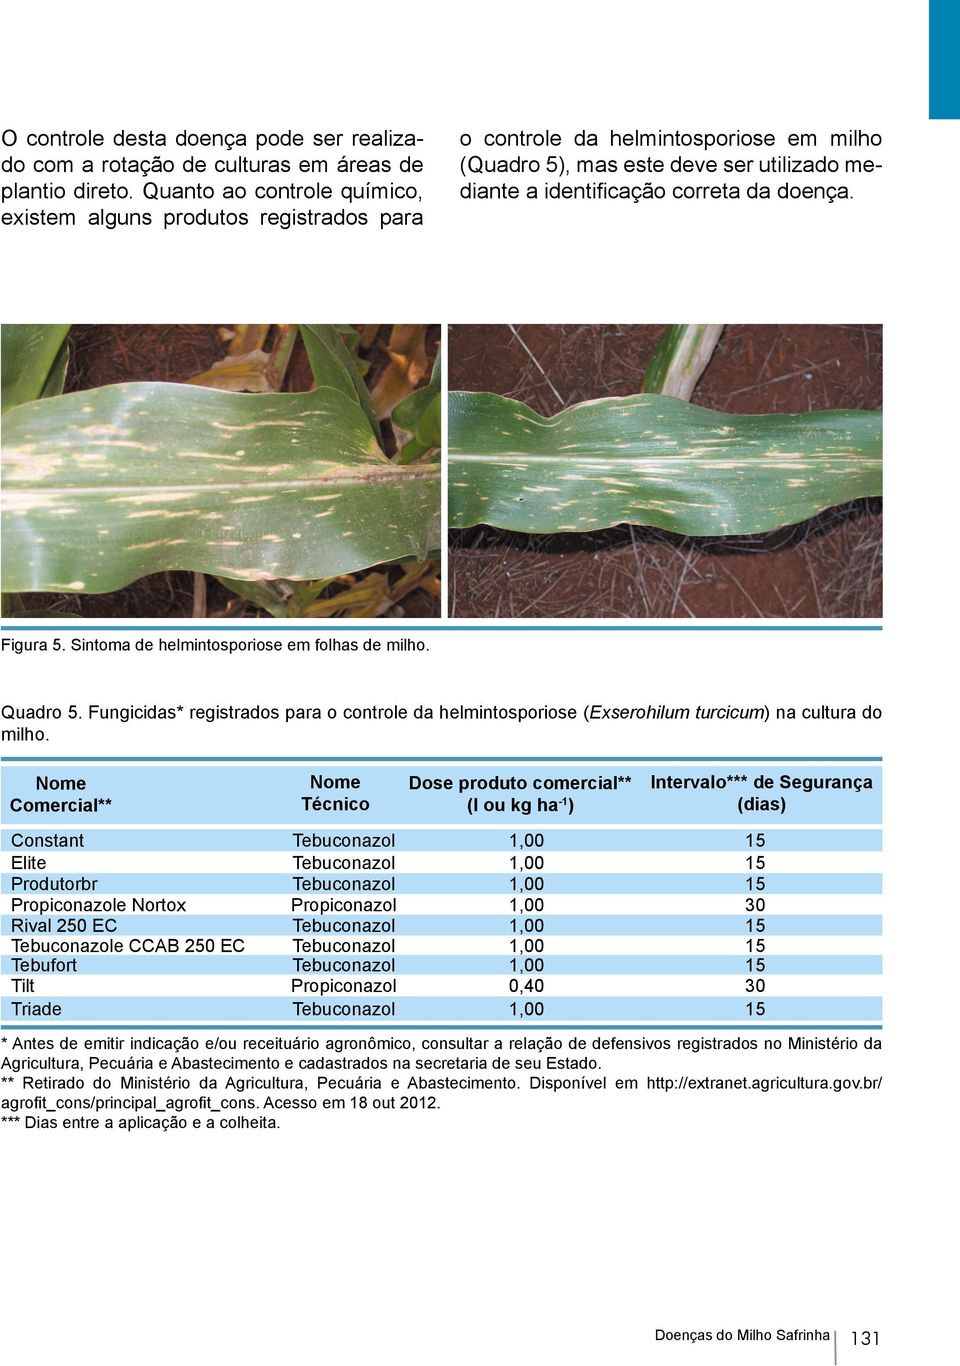 Figura 5. Sintoma de helmintosporiose em folhas de milho. Quadro 5. Fungicidas* registrados para o controle da helmintosporiose (Exserohilum turcicum) na cultura do milho.